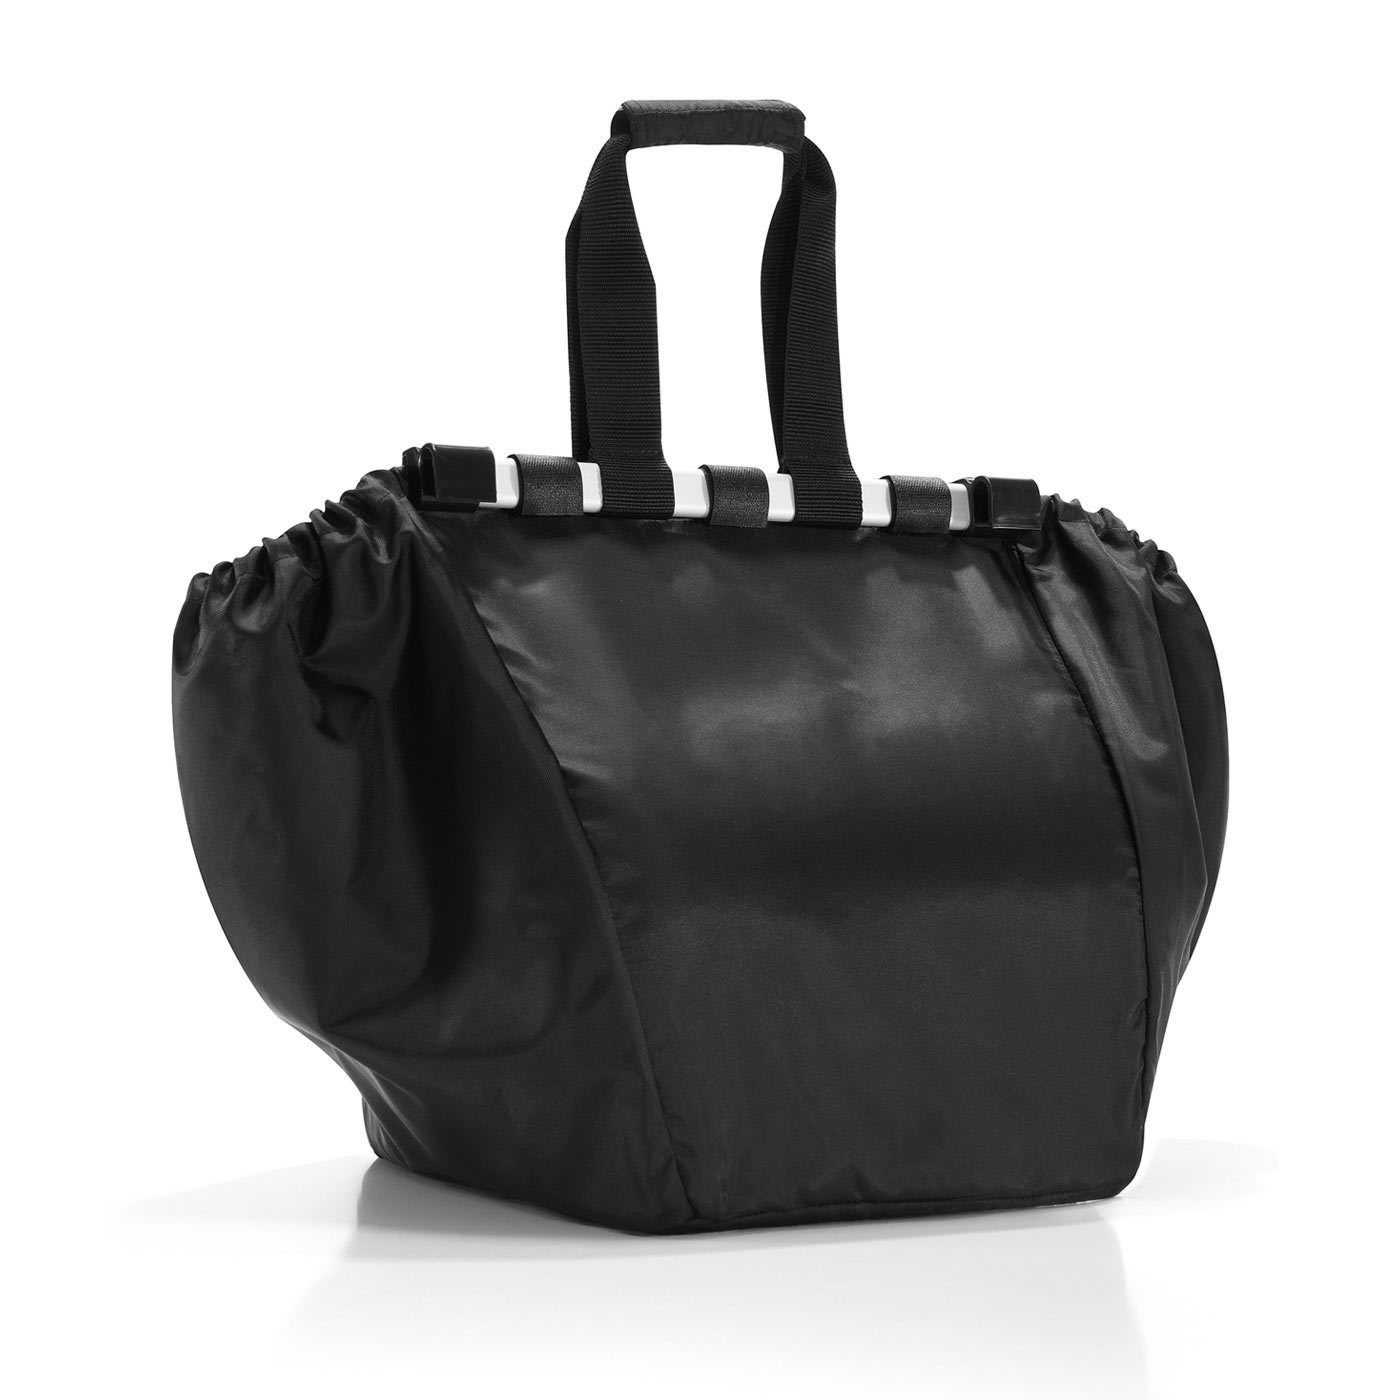 Nákupní taška do vozíku Easyshoppingbag black_2